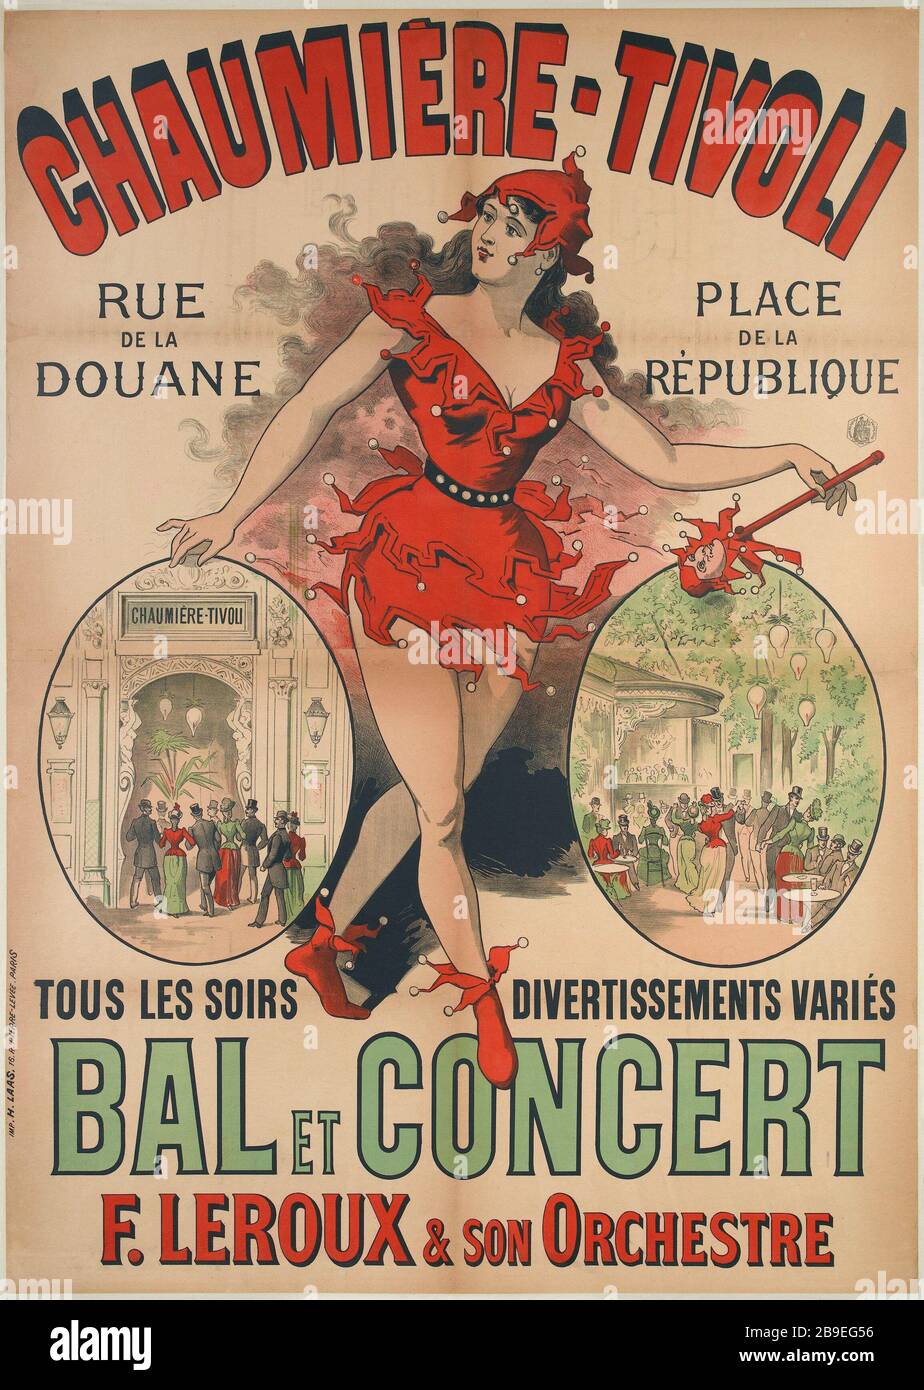 TIVOLI COTTAGE STRADA DOGANALE ANONYME. 'Chaumière-Tivoli, rue de la Douane'. Lithographie, 1890. Parigi, musée Carnavalet. Foto Stock